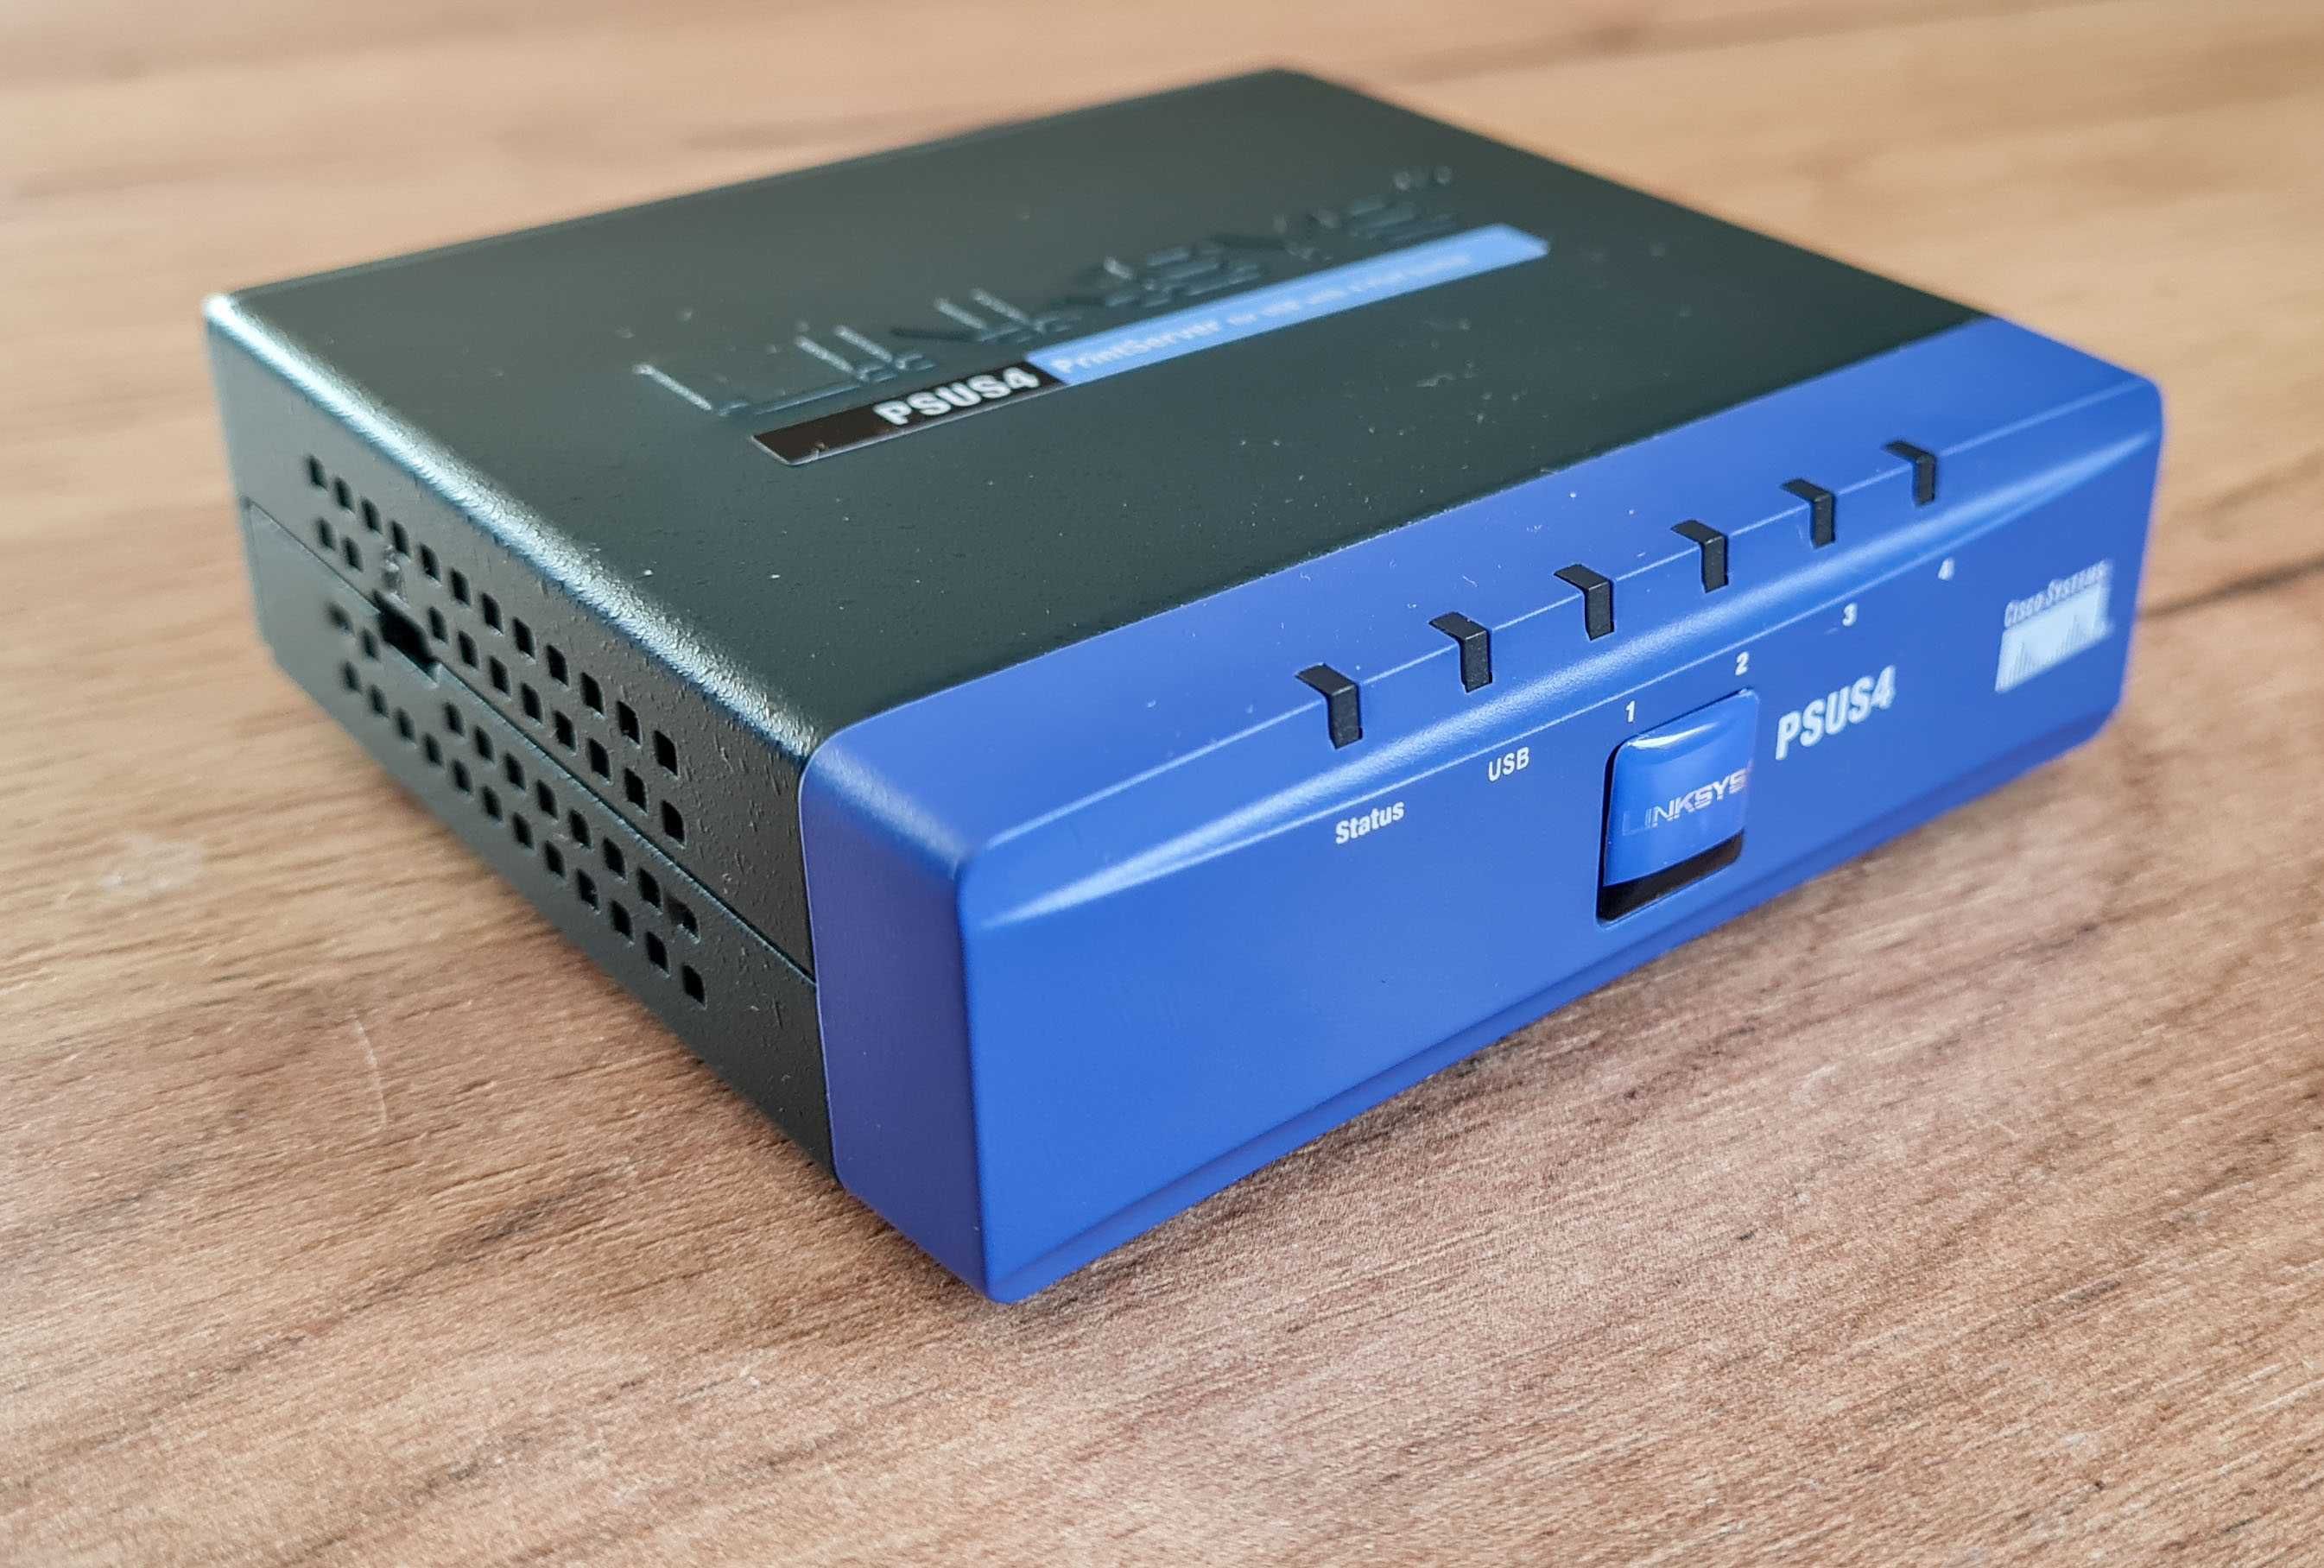 Принтсервер Linksys PSUS4 для USB принтерів із 4-портовим комутатором.